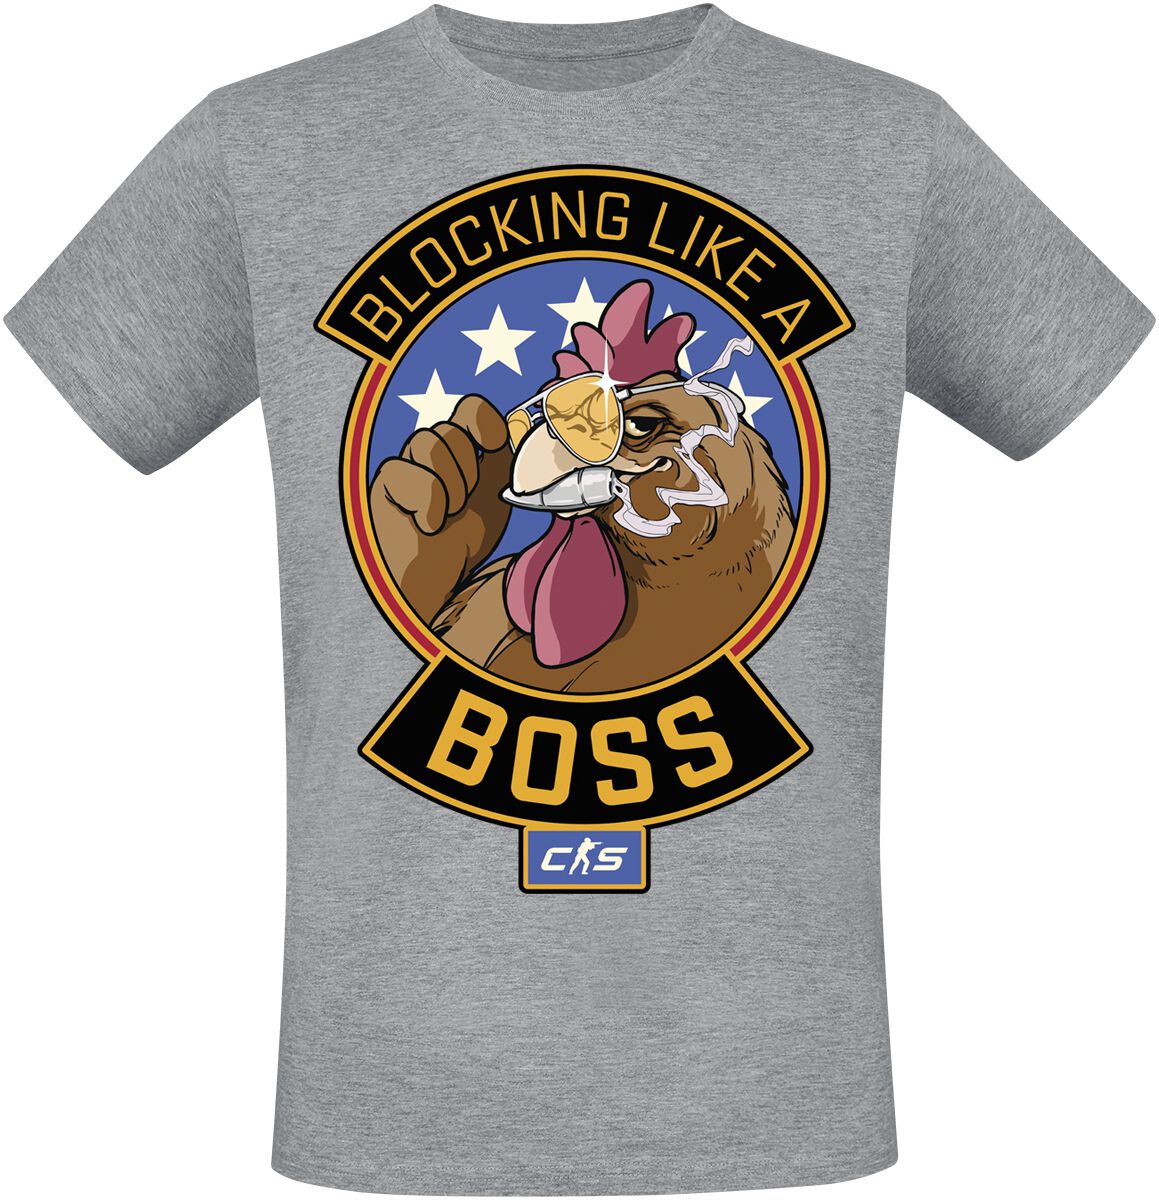 Counter-Strike - Gaming T-Shirt - 2 - Blocking Like A Boss - S bis XXL - für Männer - Größe M - grau meliert  - EMP exklusives Merchandise!